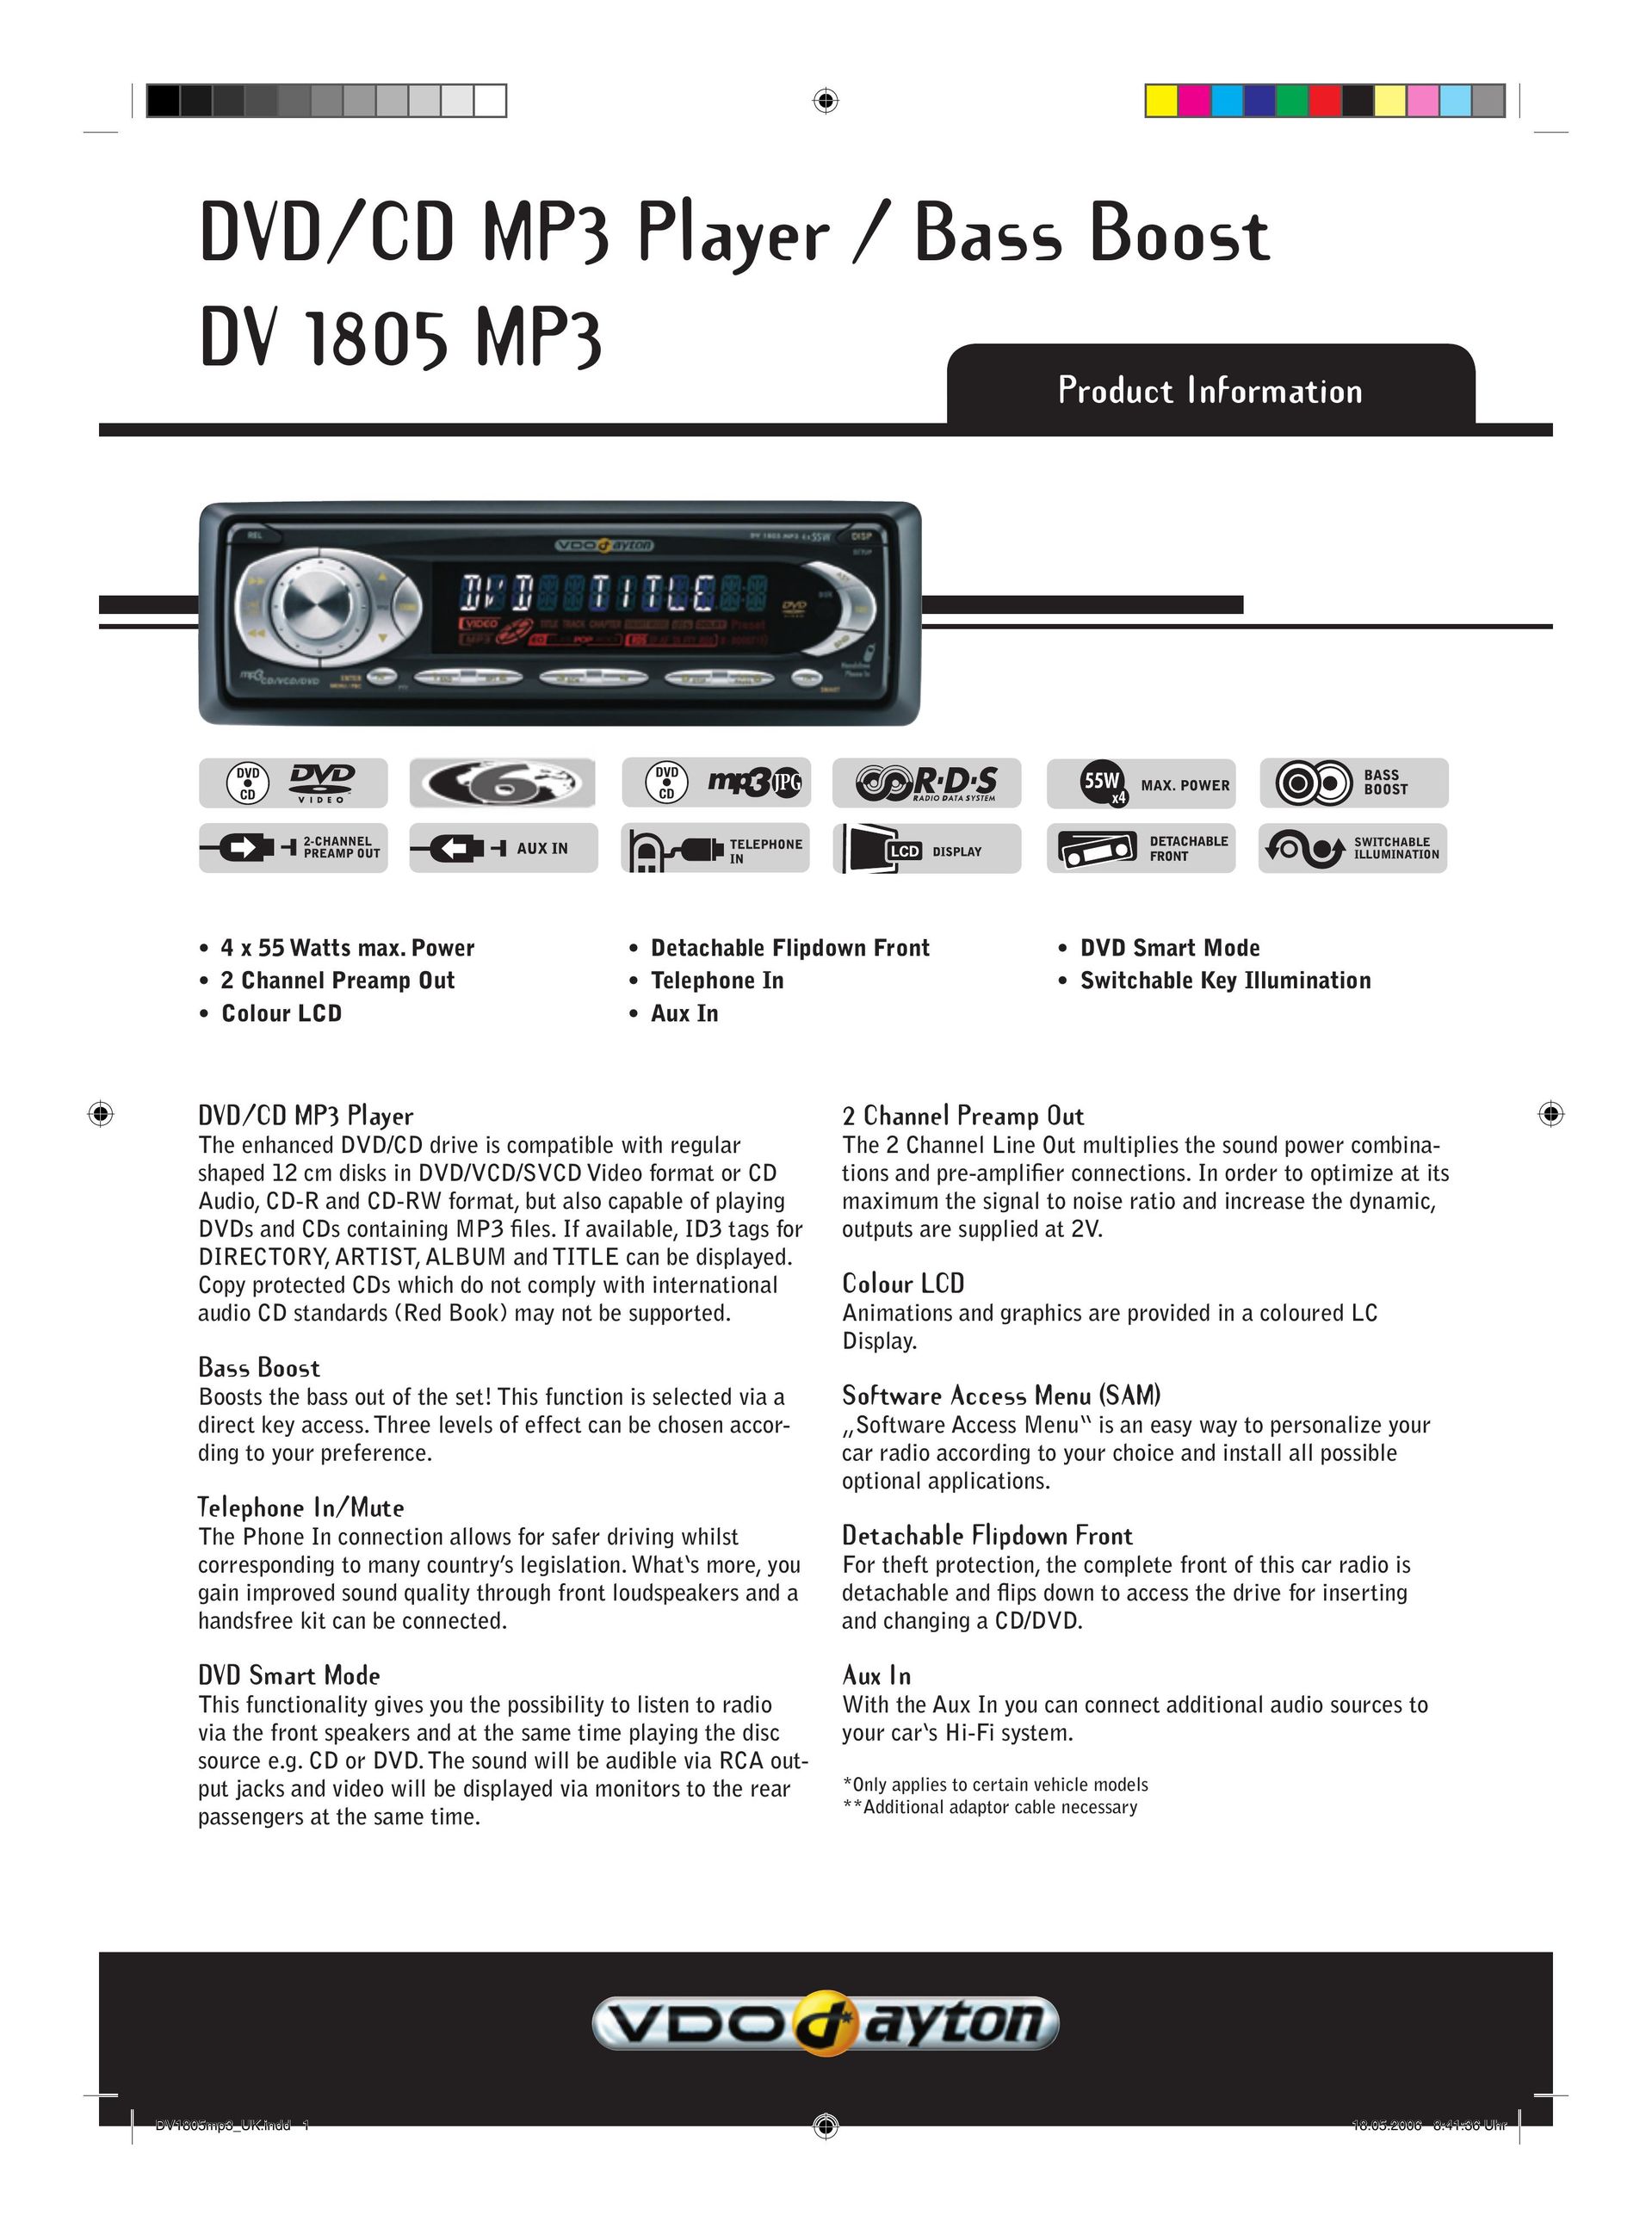 VDO Dayton DV 1805 MP3 MP3 Player User Manual